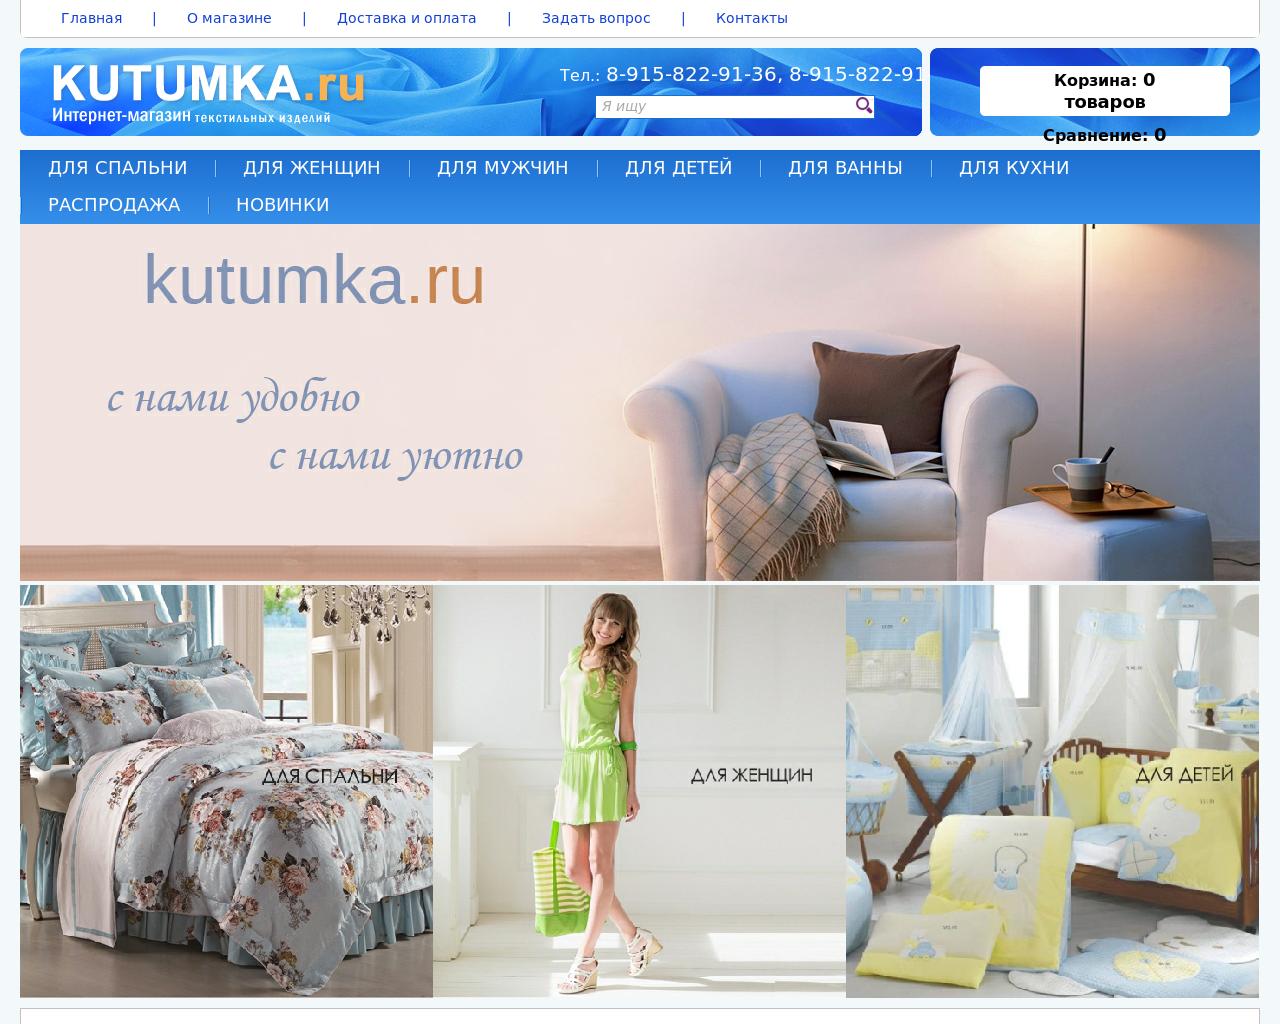 Изображение сайта kutumka.ru в разрешении 1280x1024